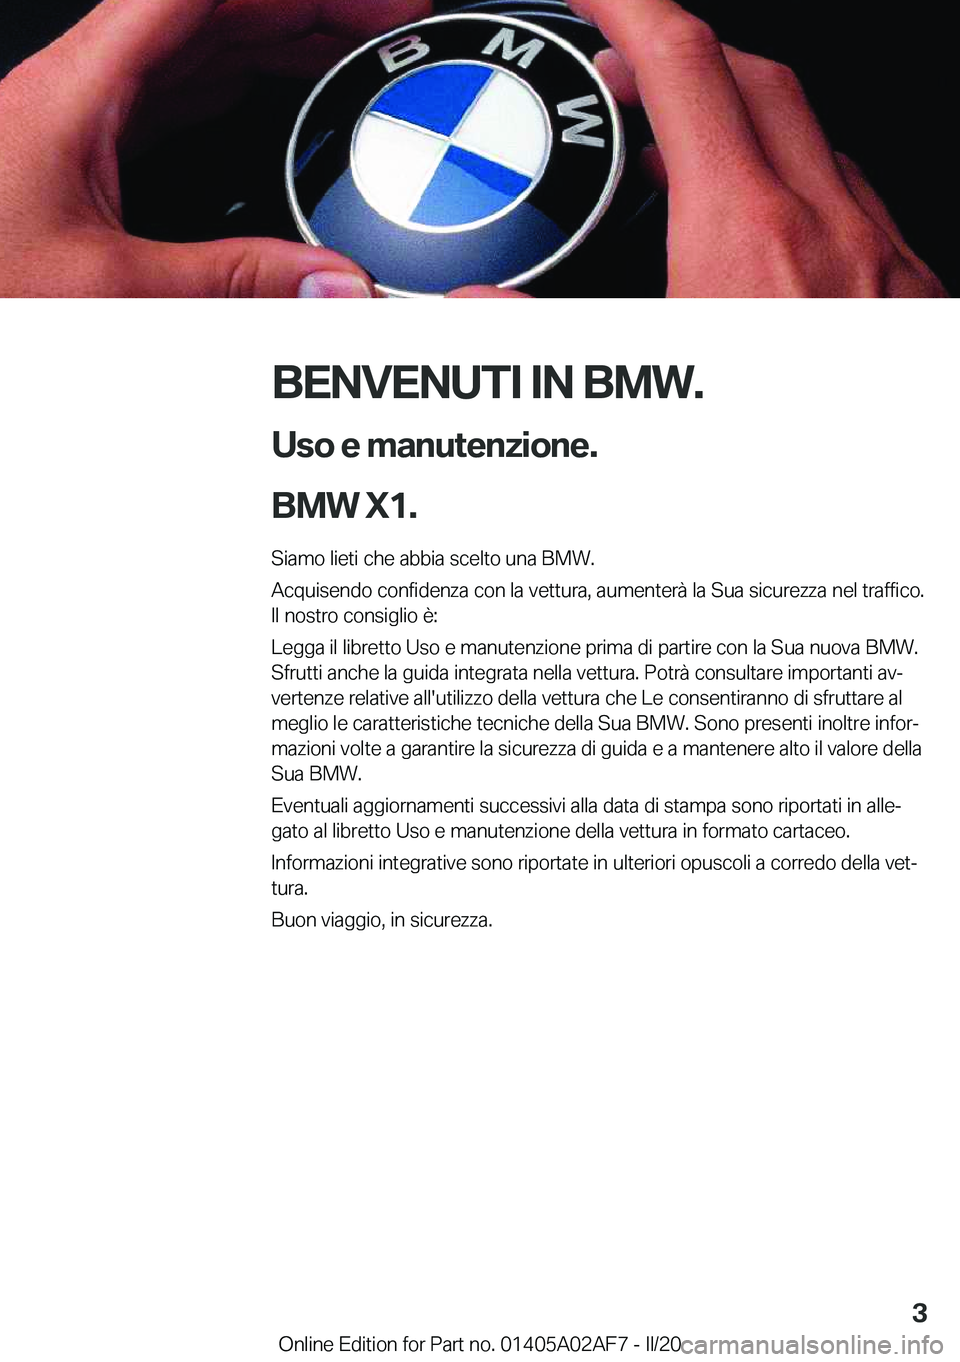 BMW X1 2020  Libretti Di Uso E manutenzione (in Italian) �B�E�N�V�E�N�U�T�I��I�N��B�M�W�.�U�s�o��e��m�a�n�u�t�e�n�z�i�o�n�e�.
�B�M�W��X�1�.
�S�i�a�m�o��l�i�e�t�i��c�h�e��a�b�b�i�a��s�c�e�l�t�o��u�n�a��B�M�W�.
�A�c�q�u�i�s�e�n�d�o��c�o�n�f�i�d�e�